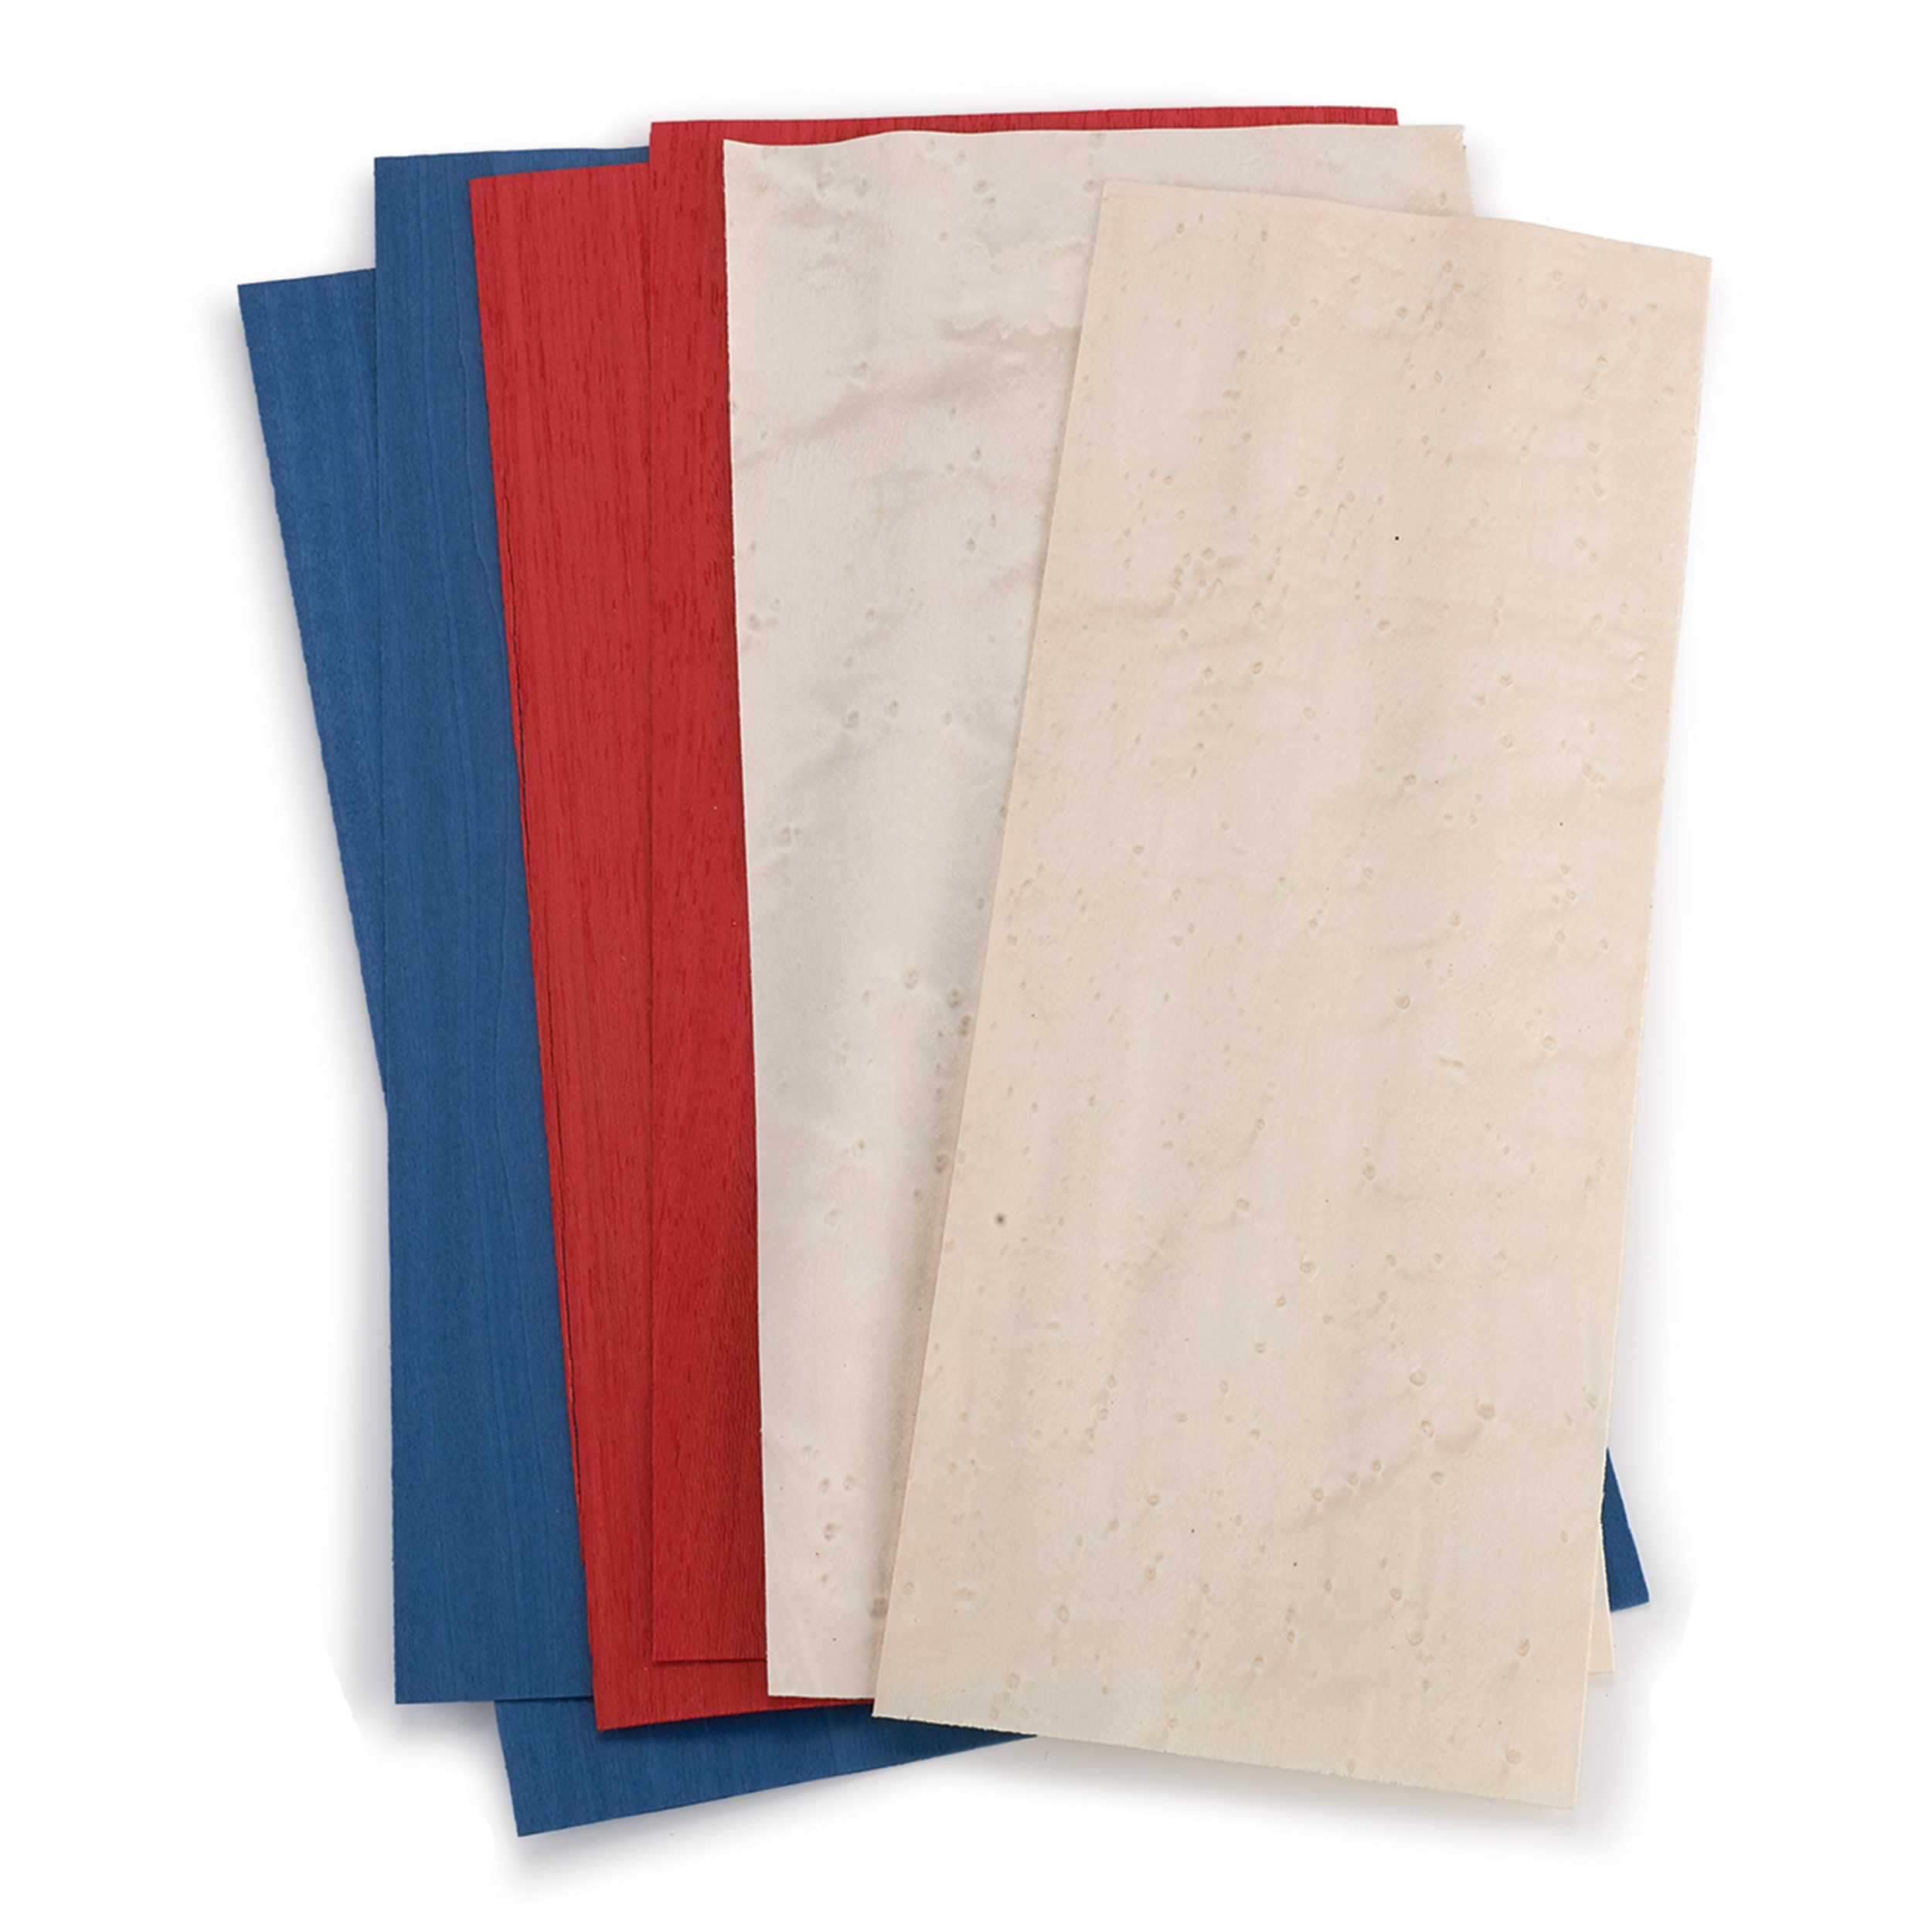 Dyed Red, White & Blue Patriotic Veneer Pack 3 Sq Ft